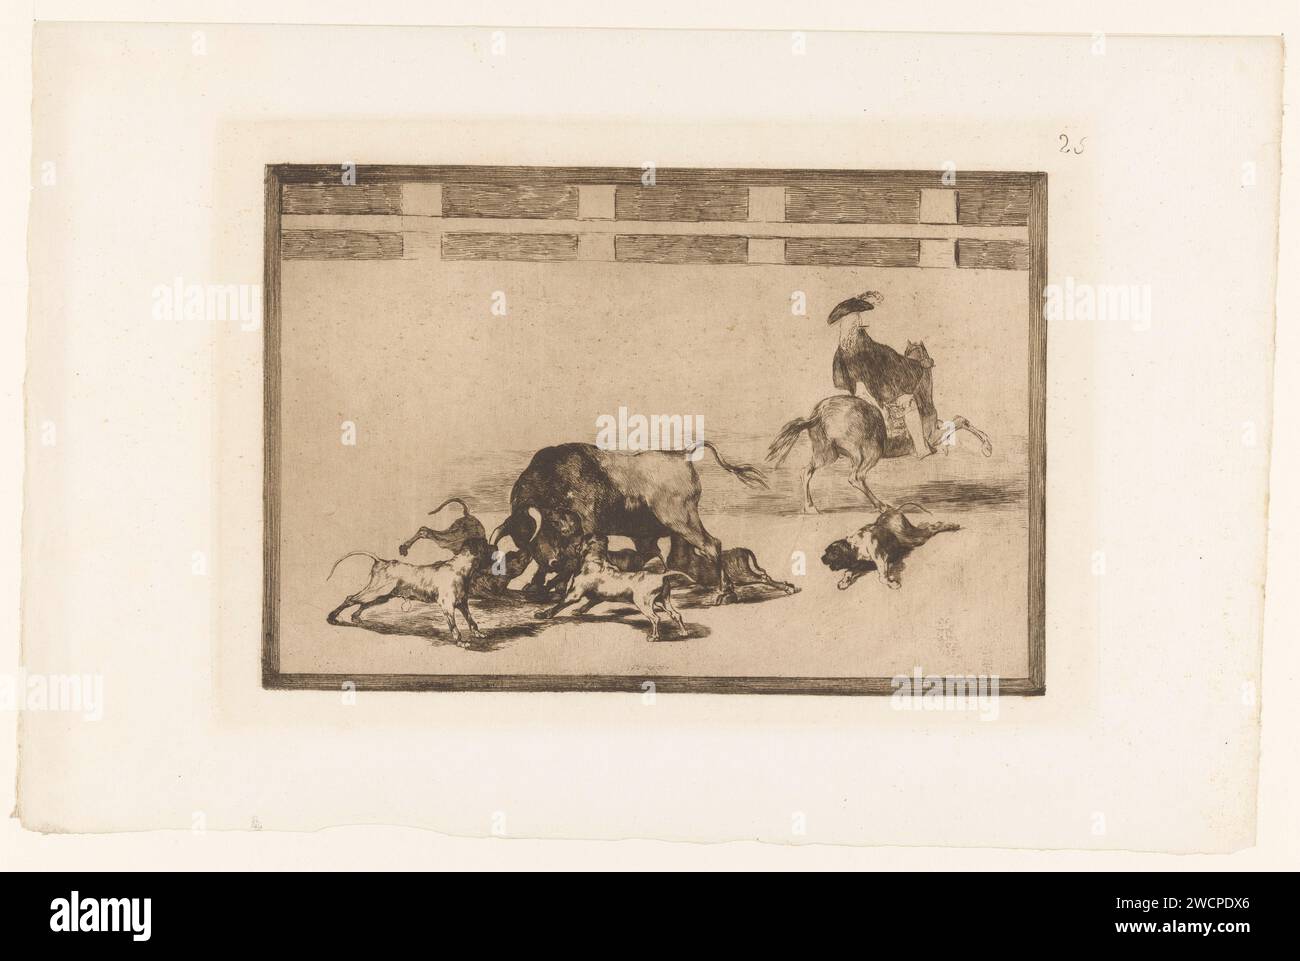 Stier von Hunden angegriffen, Francisco de Goya, 1876 Druck fünf Hunde greifen einen Stier in einer Arena an. Ein Hund ist auf dem Boden verwundet. Auf der rechten Seite ein Mann zu Pferd, auf dem Rücken gesehen. Oben rechts nummeriert: 25. Druckerei: Spainpublisher: Paris Paper Radiching Bullfight Stockfoto